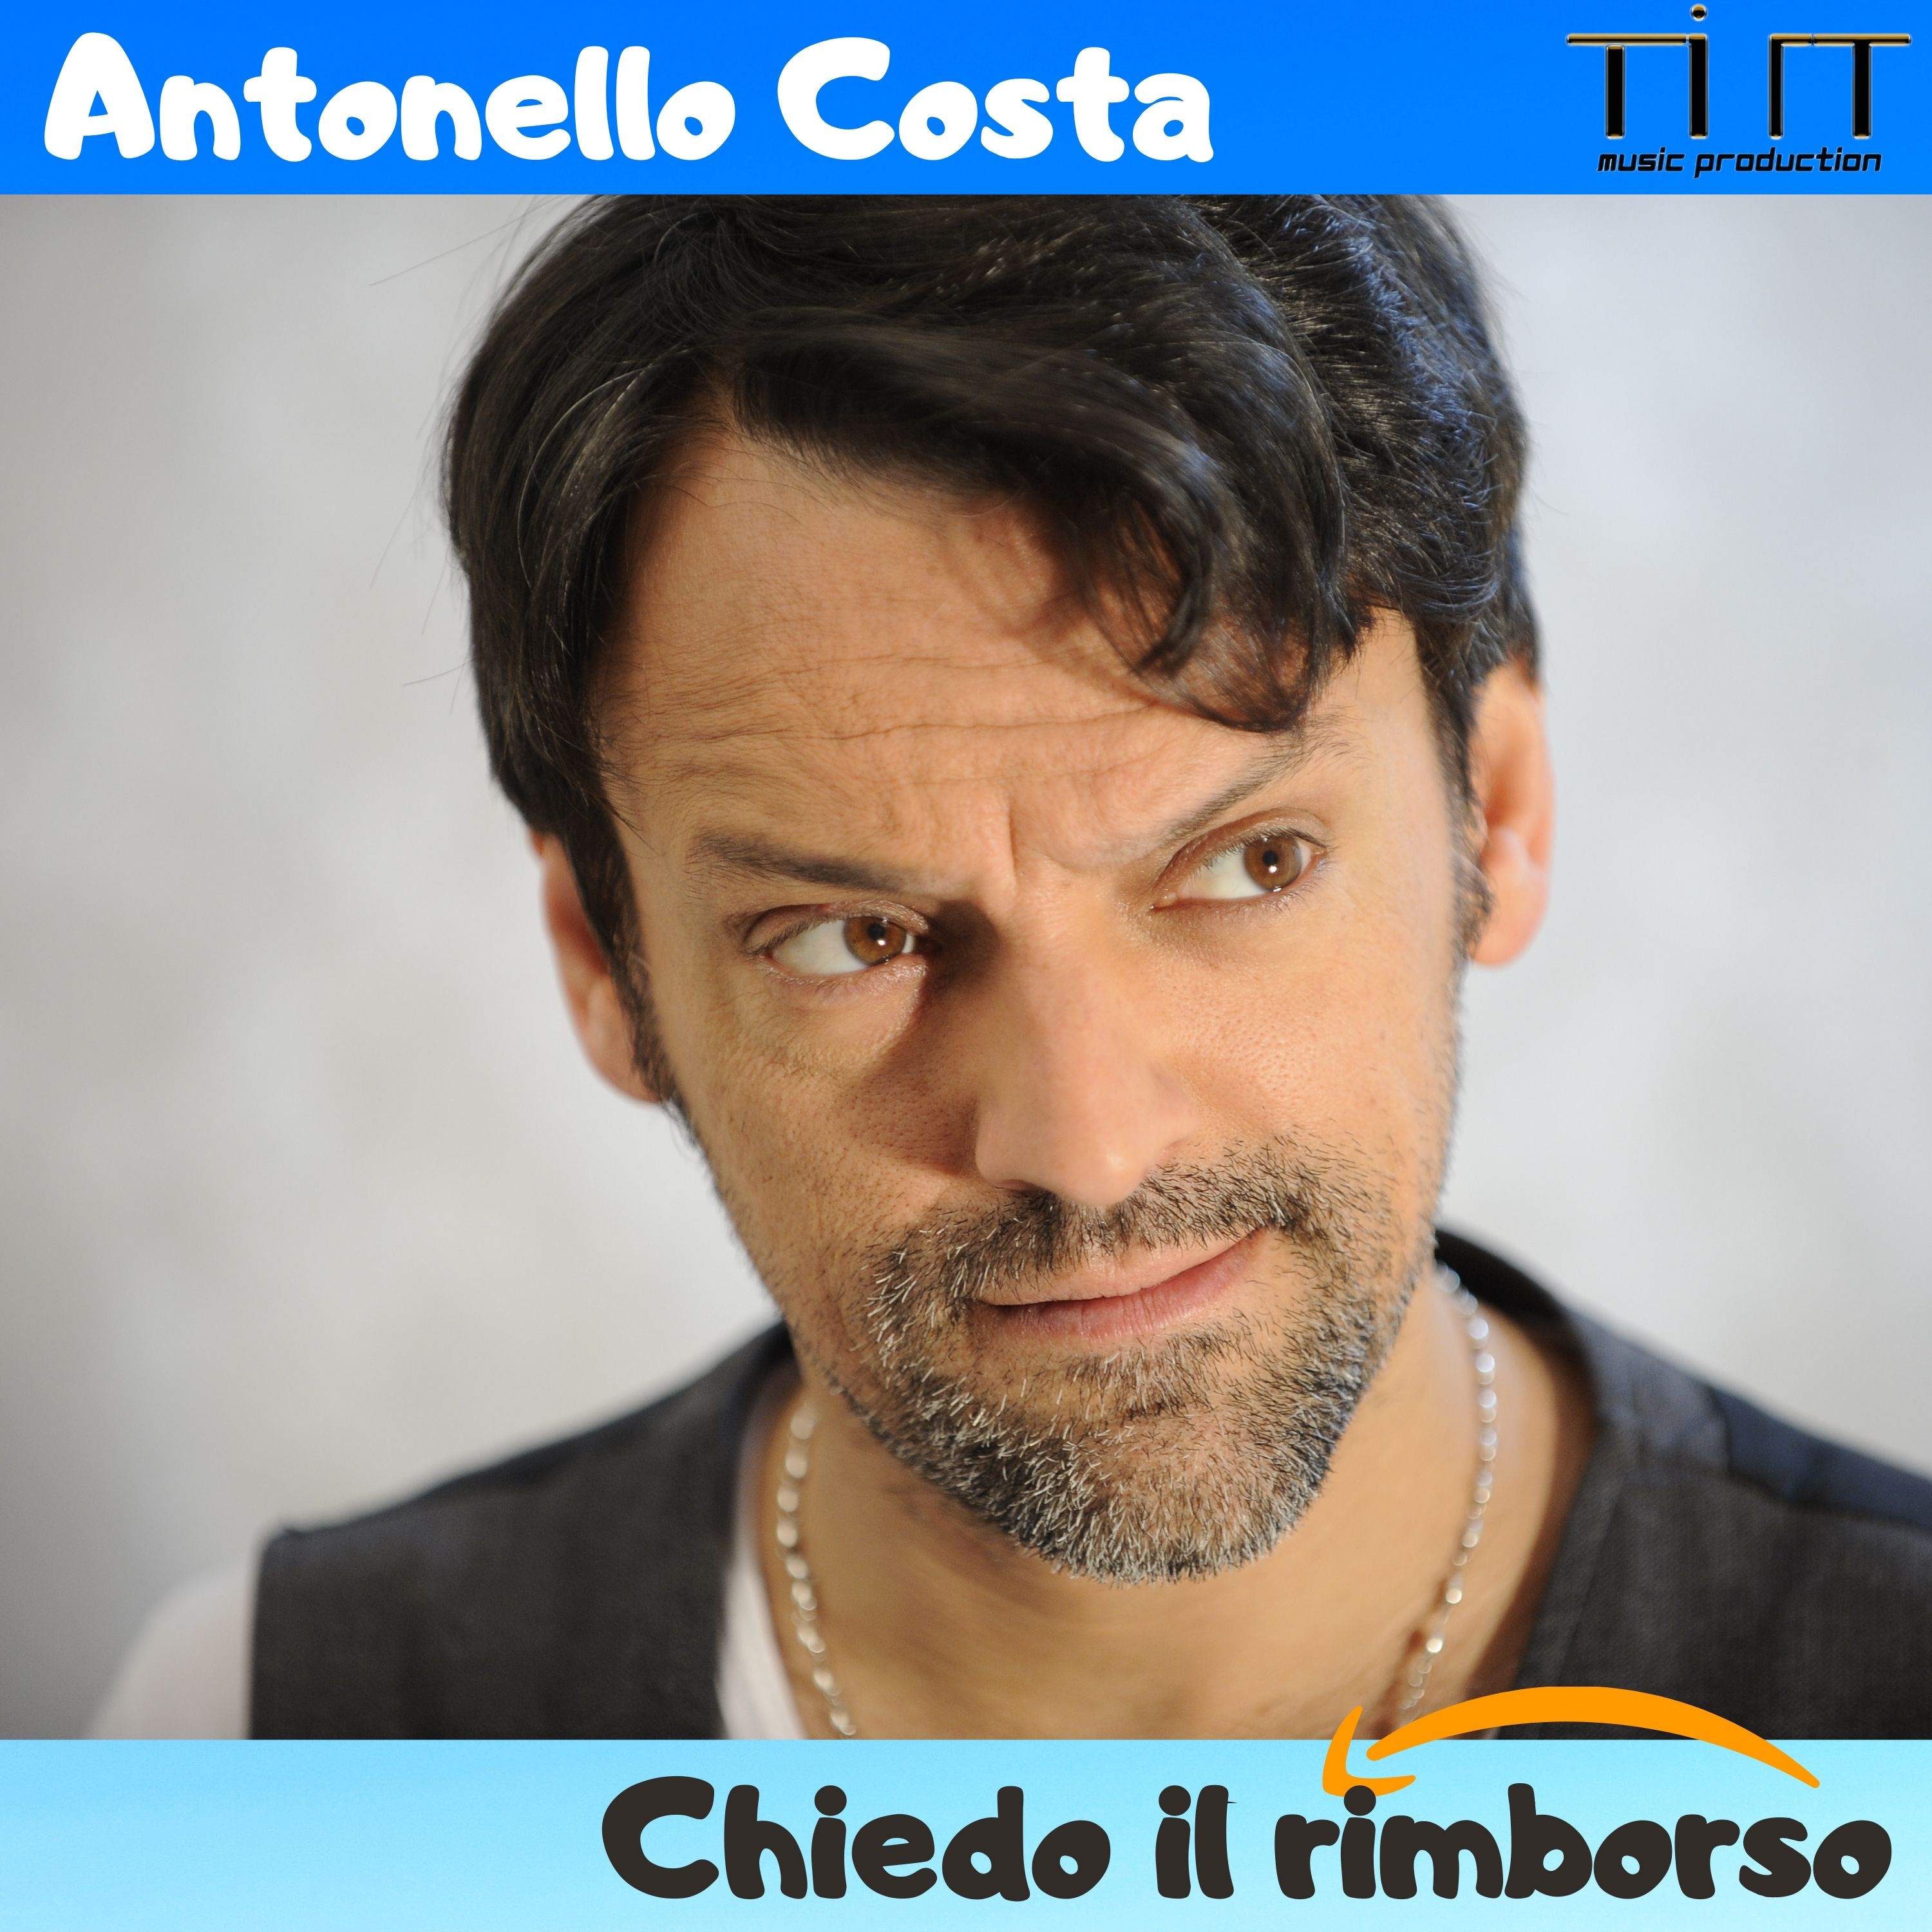 CHIEDO IL RIMBORSO di Antonello Costa verrà pubblicato con una doppia data commemorativa!!